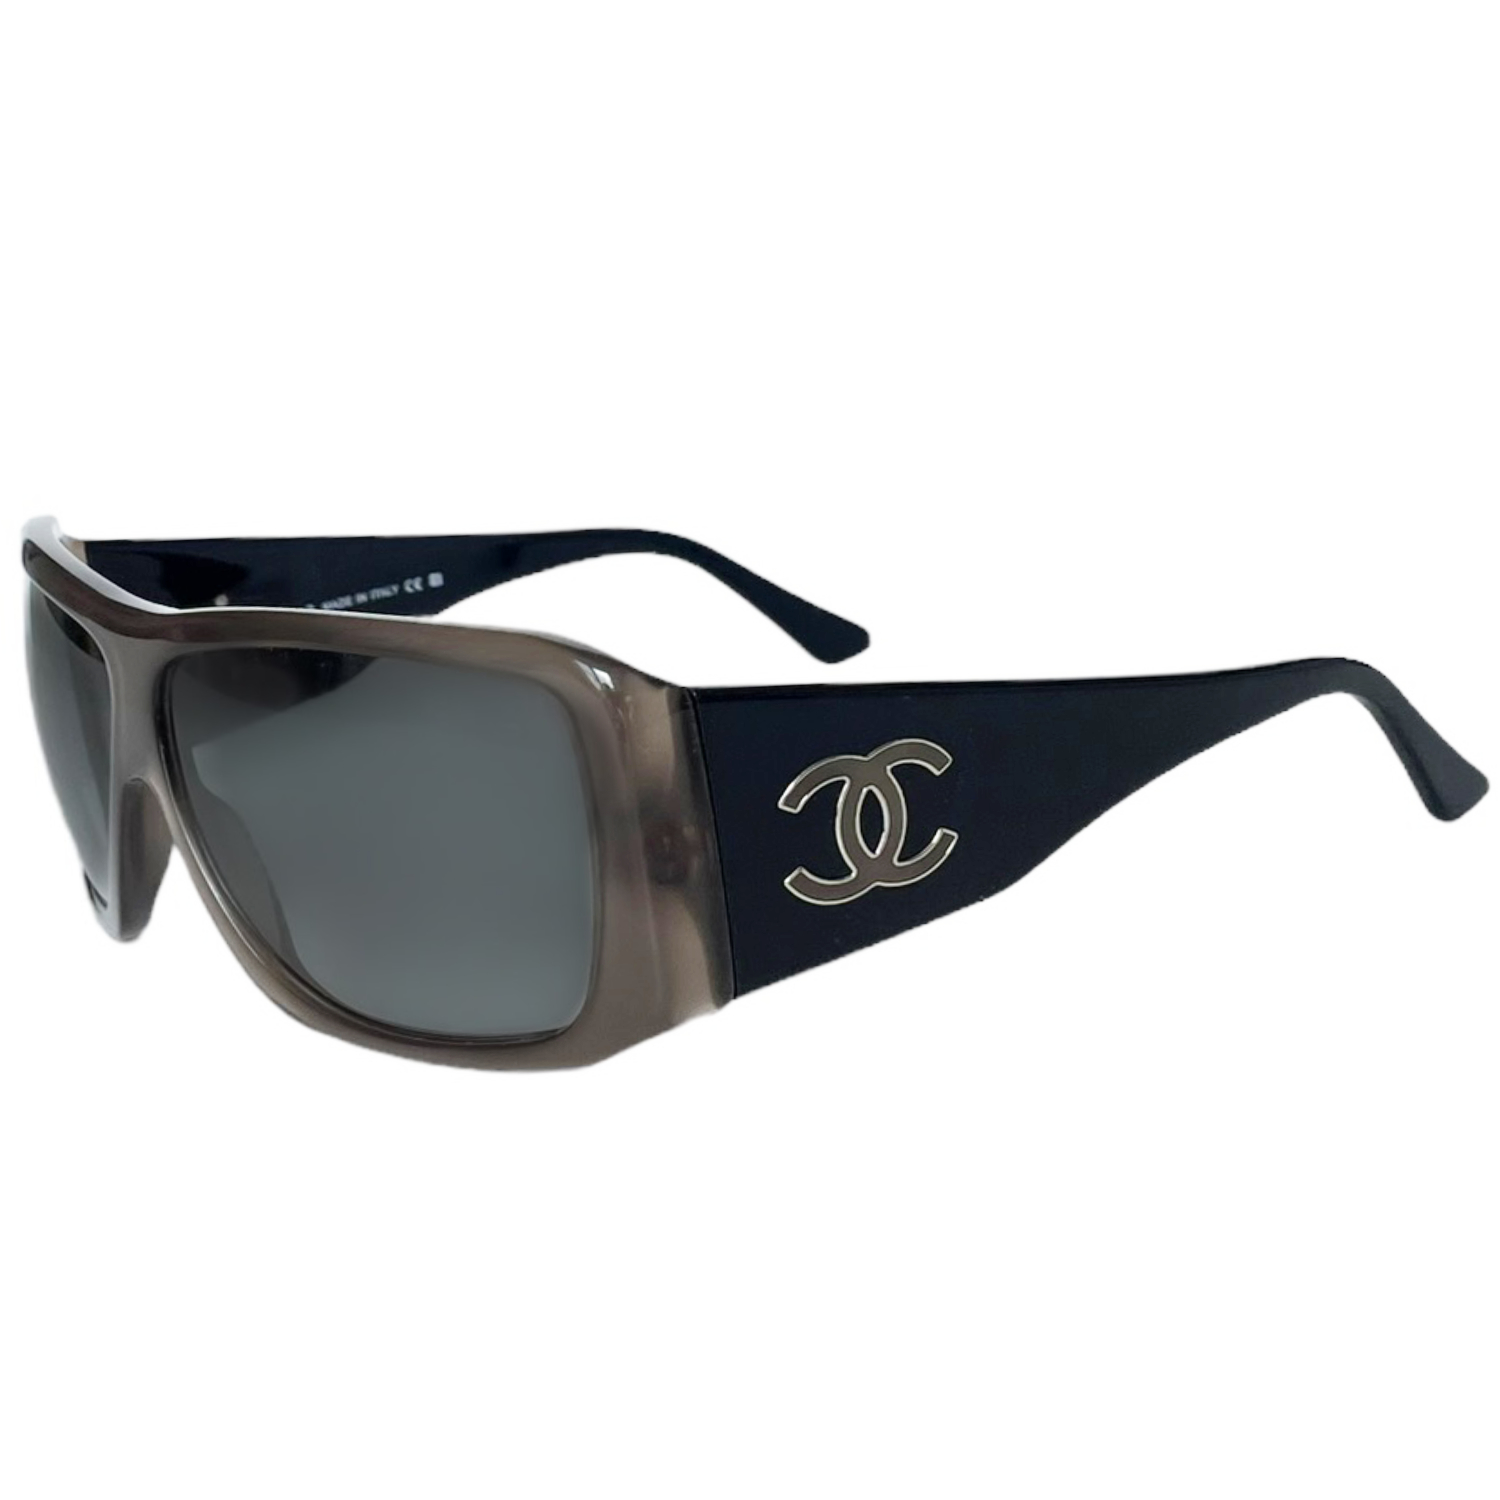 Vintage Chanel 5088-B vintage sunglasses